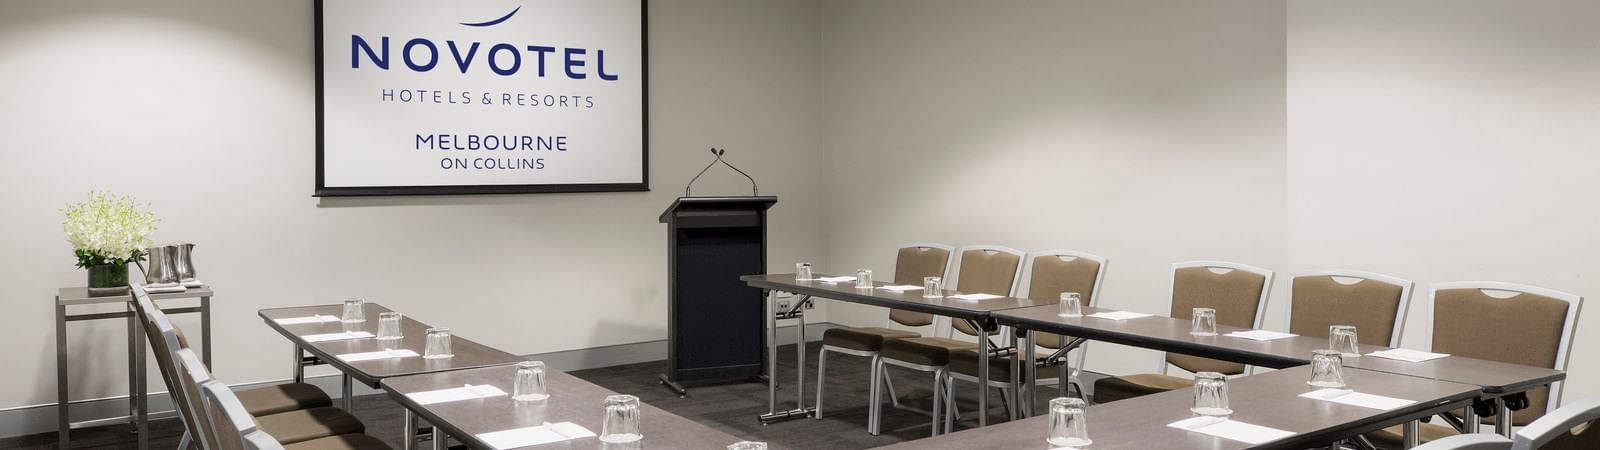 U-shaped table setup for meeting at Novotel Melbourne